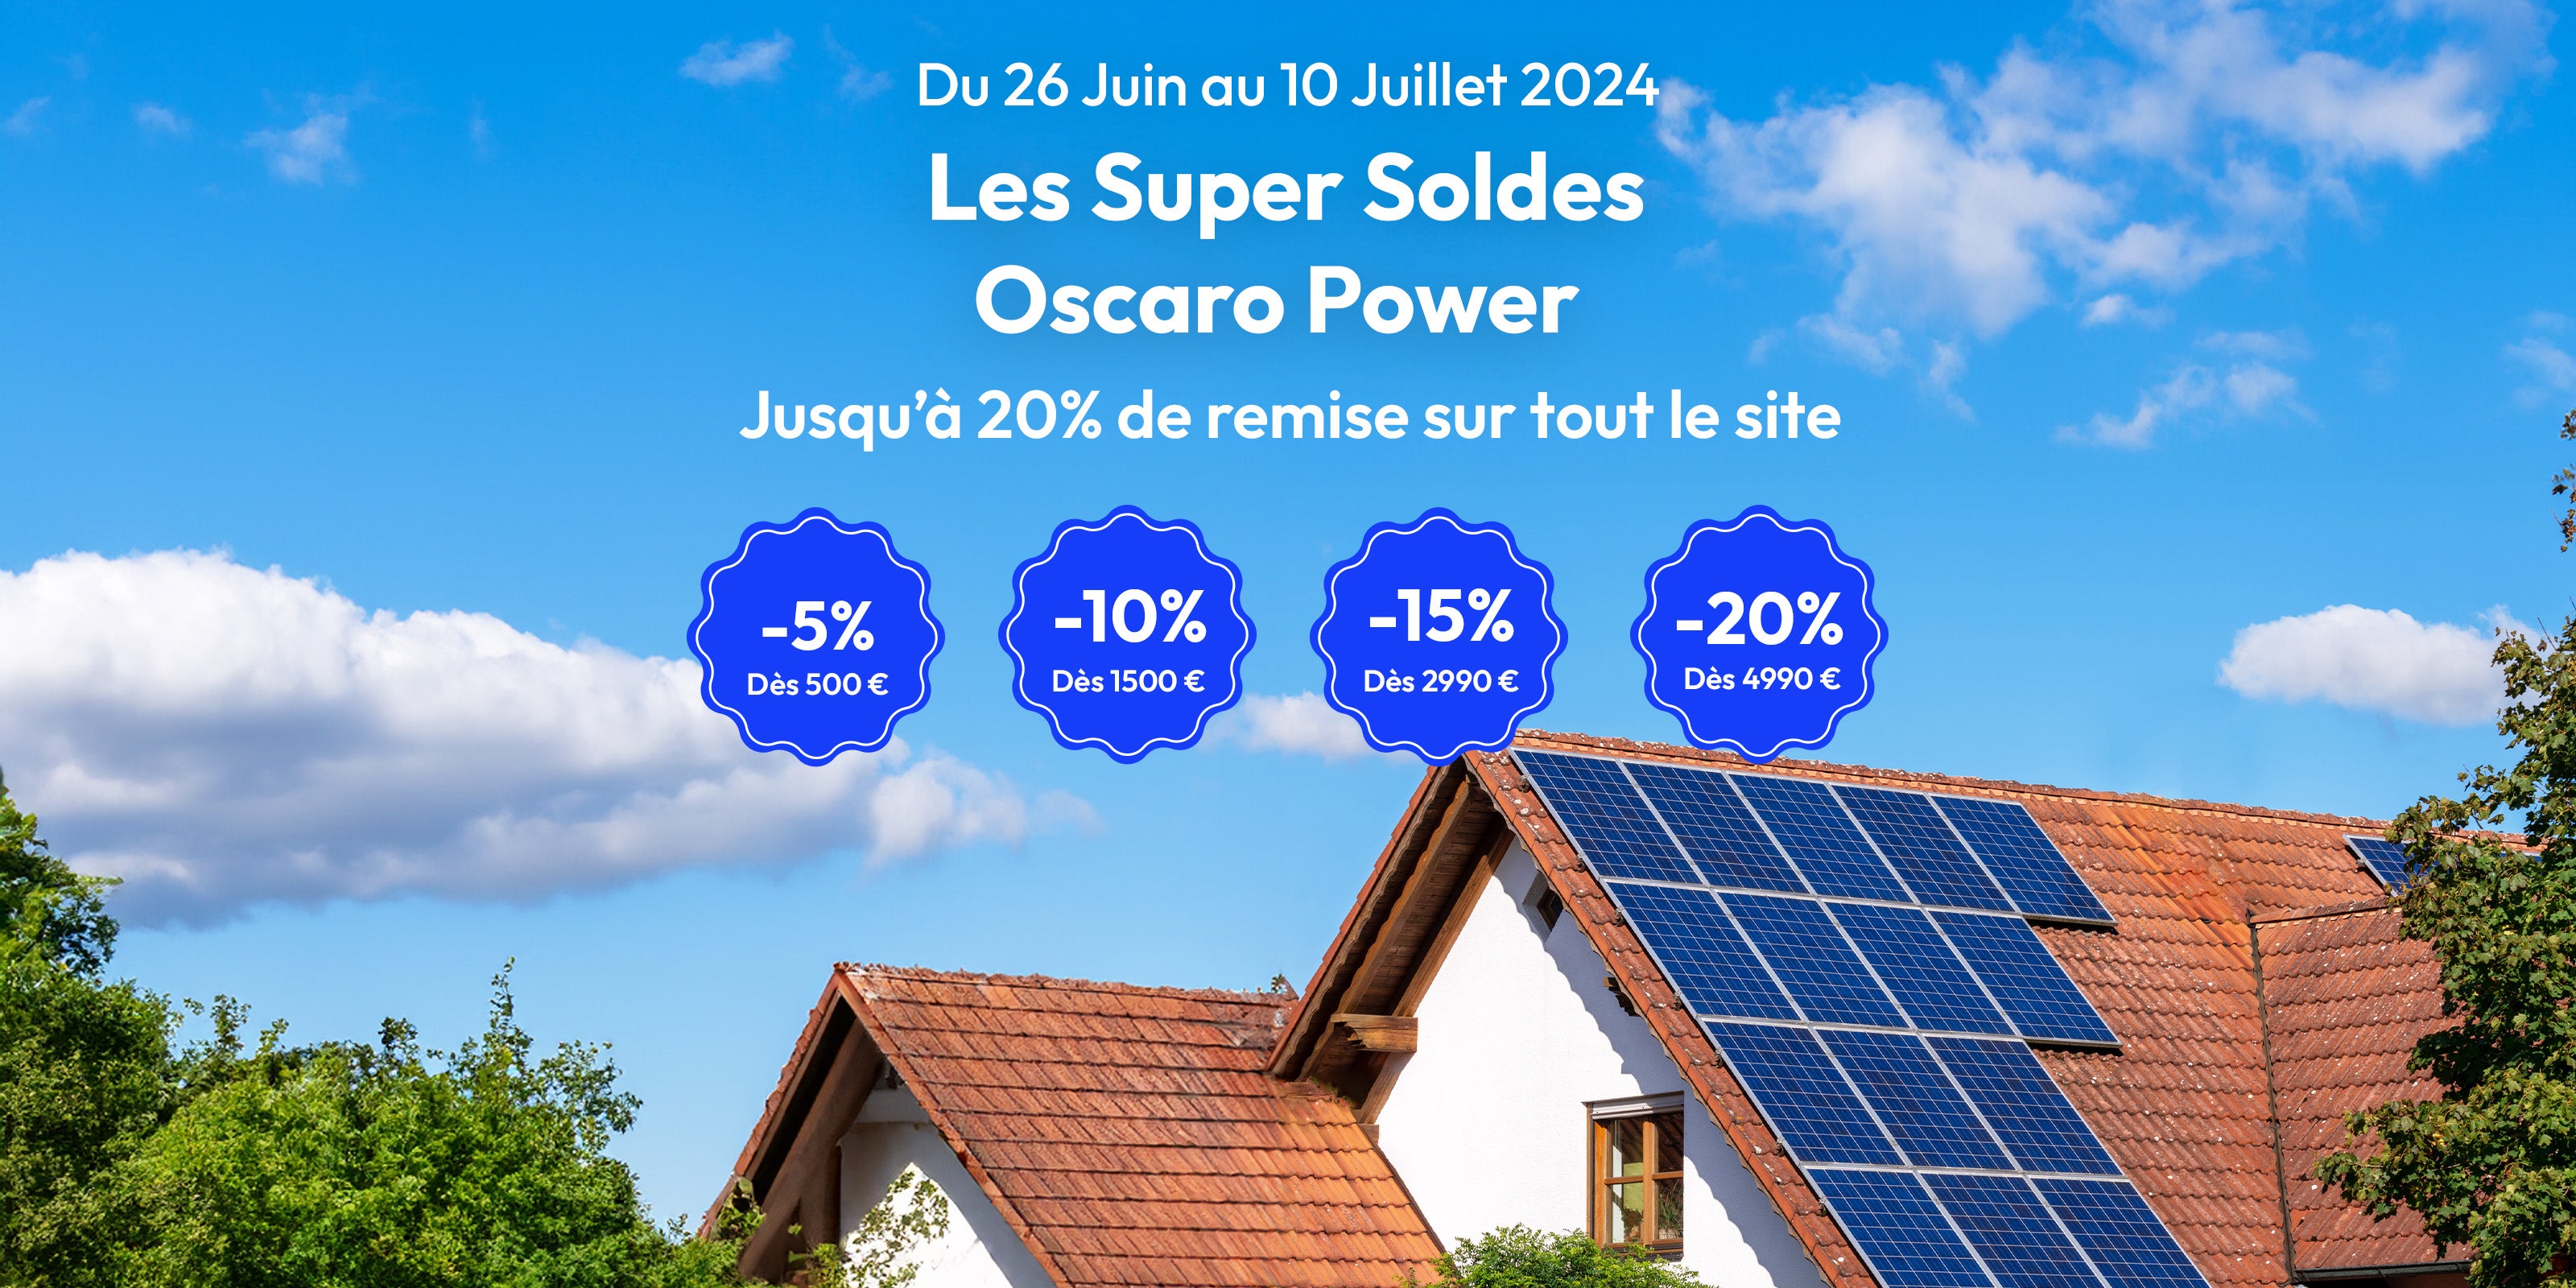 Maison avec panneaux solaires - pastilles promotionnelles Soldes Oscaro Power